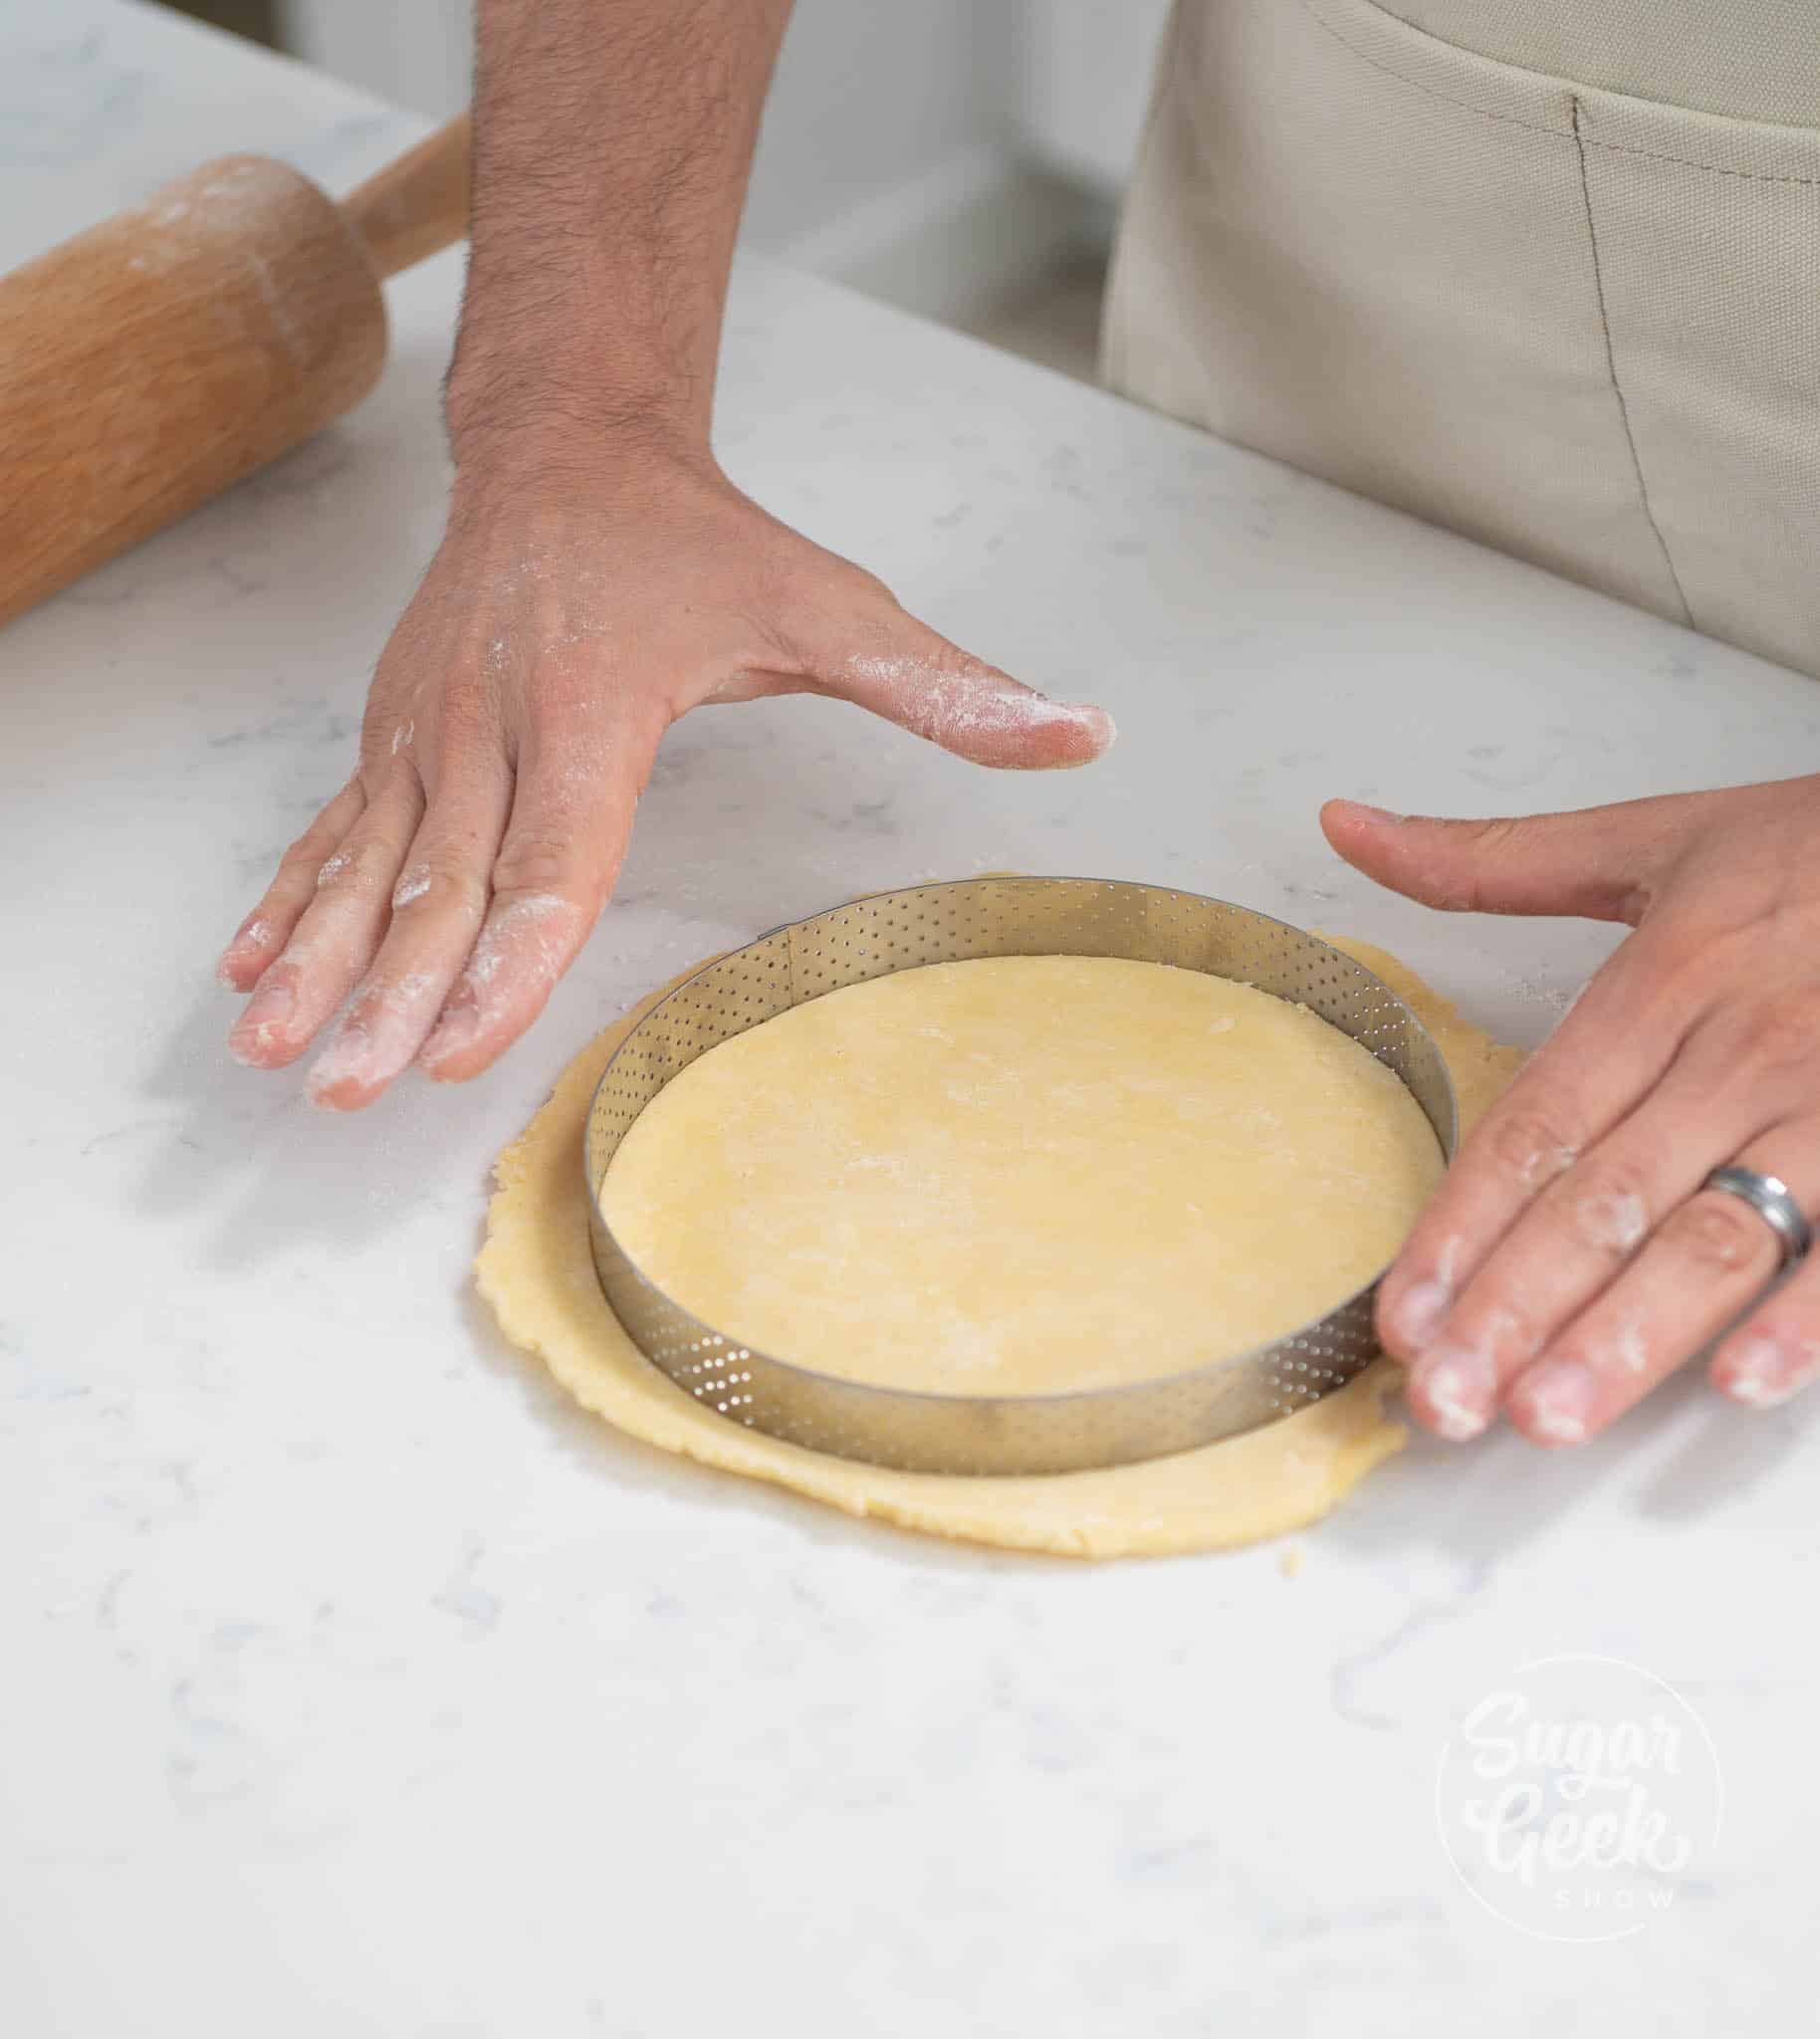 hands using cutter to cut dough